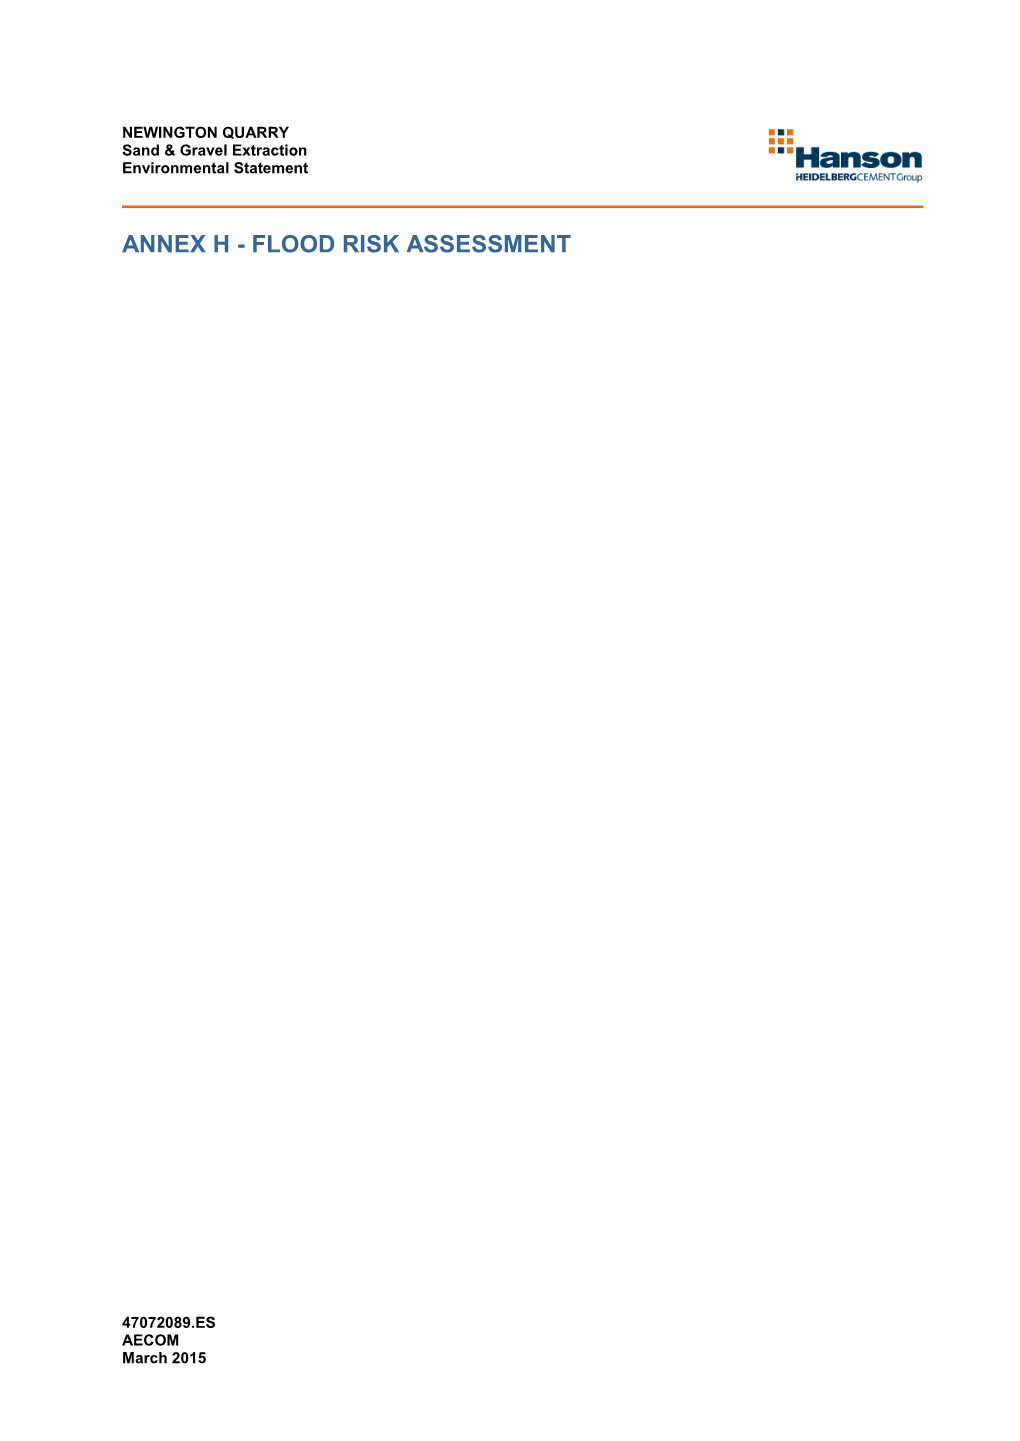 Annex H - Flood Risk Assessment